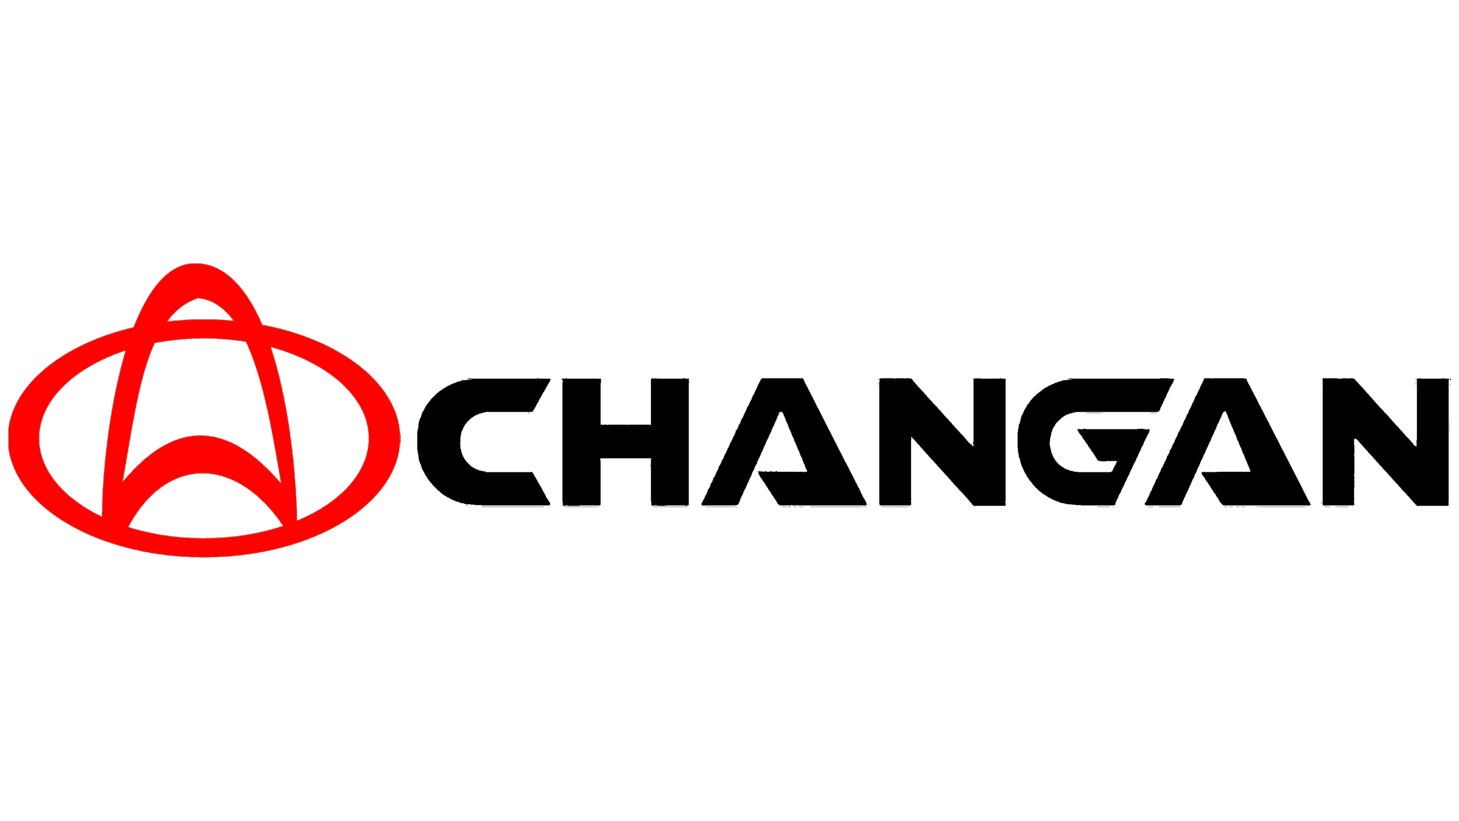 Changan sign 1957 1998